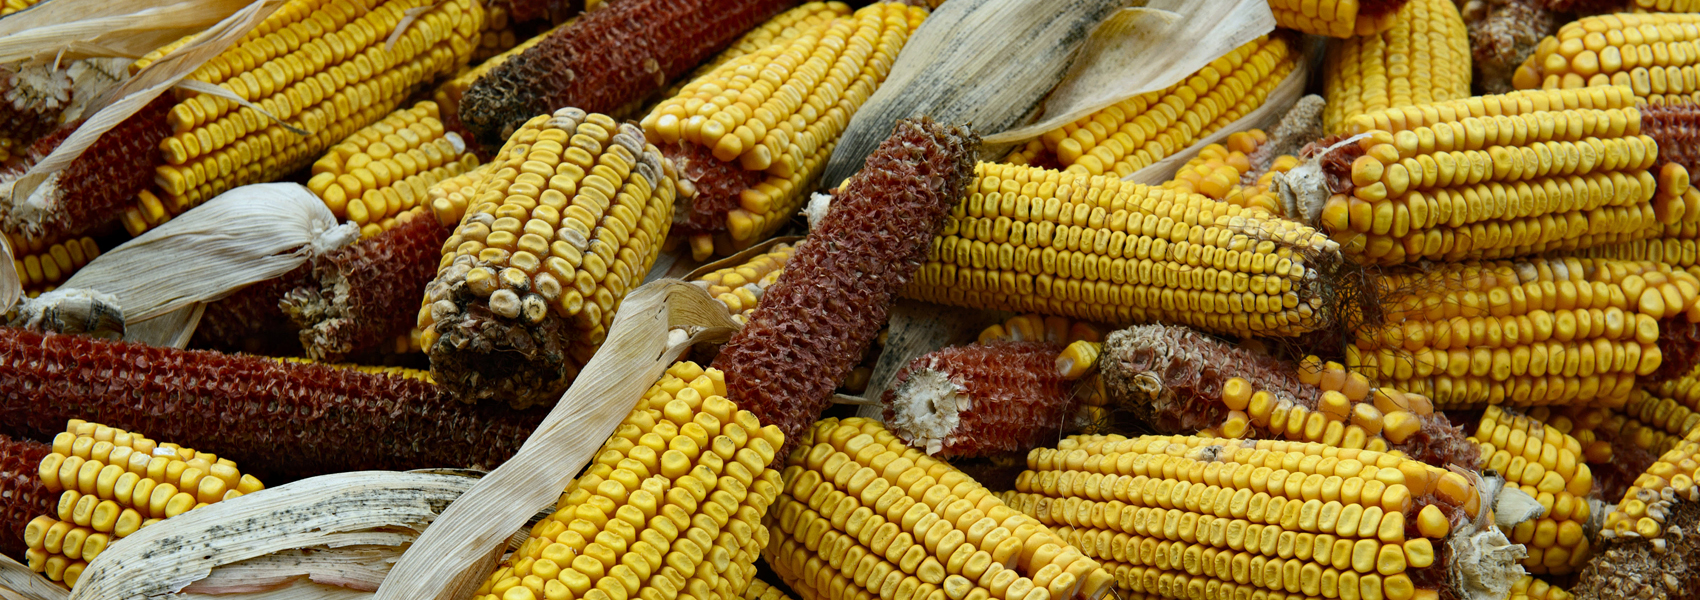 Freshly harvested corn